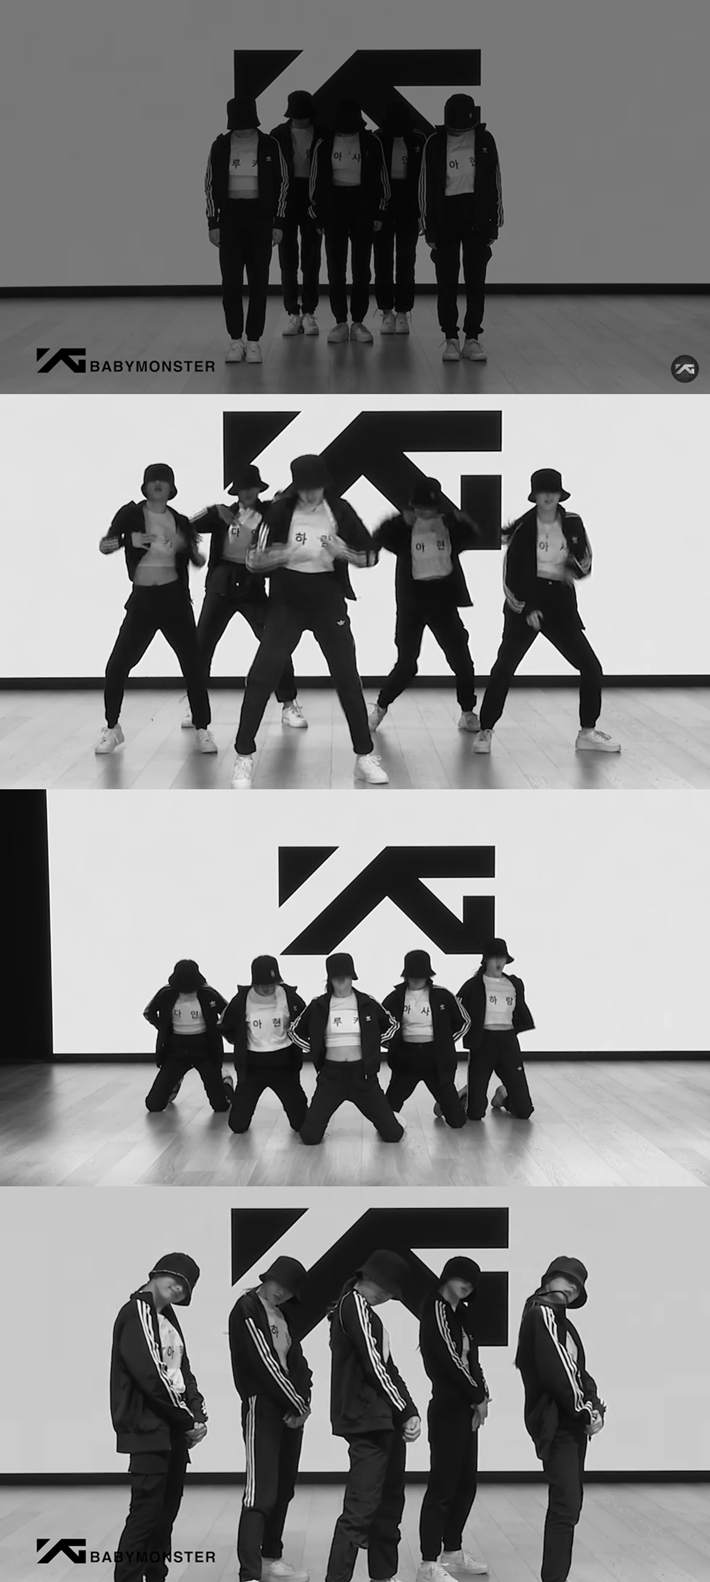 19일 첫 안무 영상을 공개한 YG엔터테인먼트 신인 베이비몬스터. 베이비몬스터 춤 연습 영상 캡처